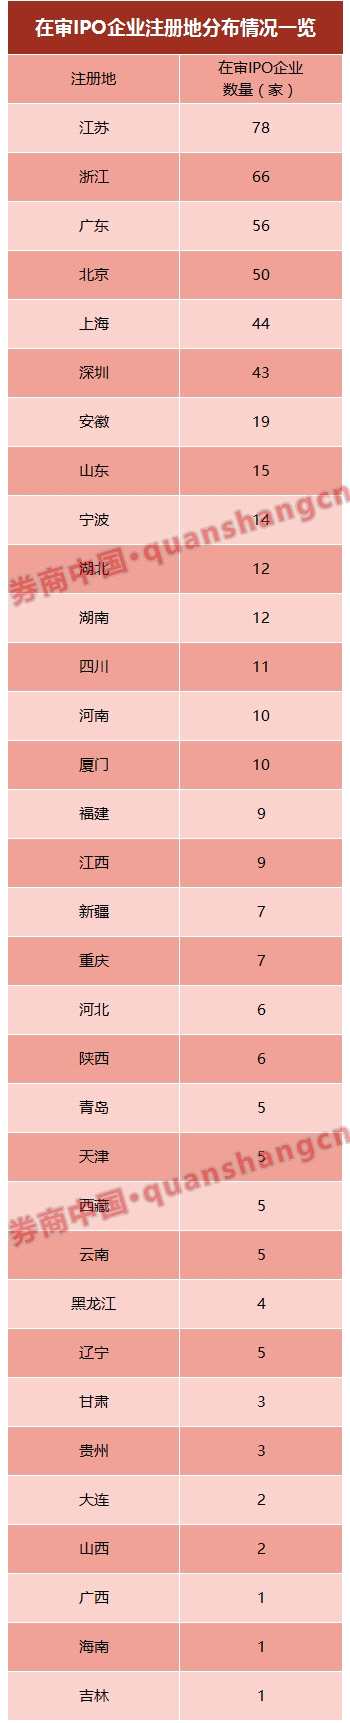 具体来看，江苏地区以78家IPO排队企业位居第一，占总数14.83%；紧跟其后的是浙江，有66家IPO排队企业；广东地区有56家(不含深圳)。而北京、上海、深圳的IPO排队企业也超过了40家。来自前述6个省市的 